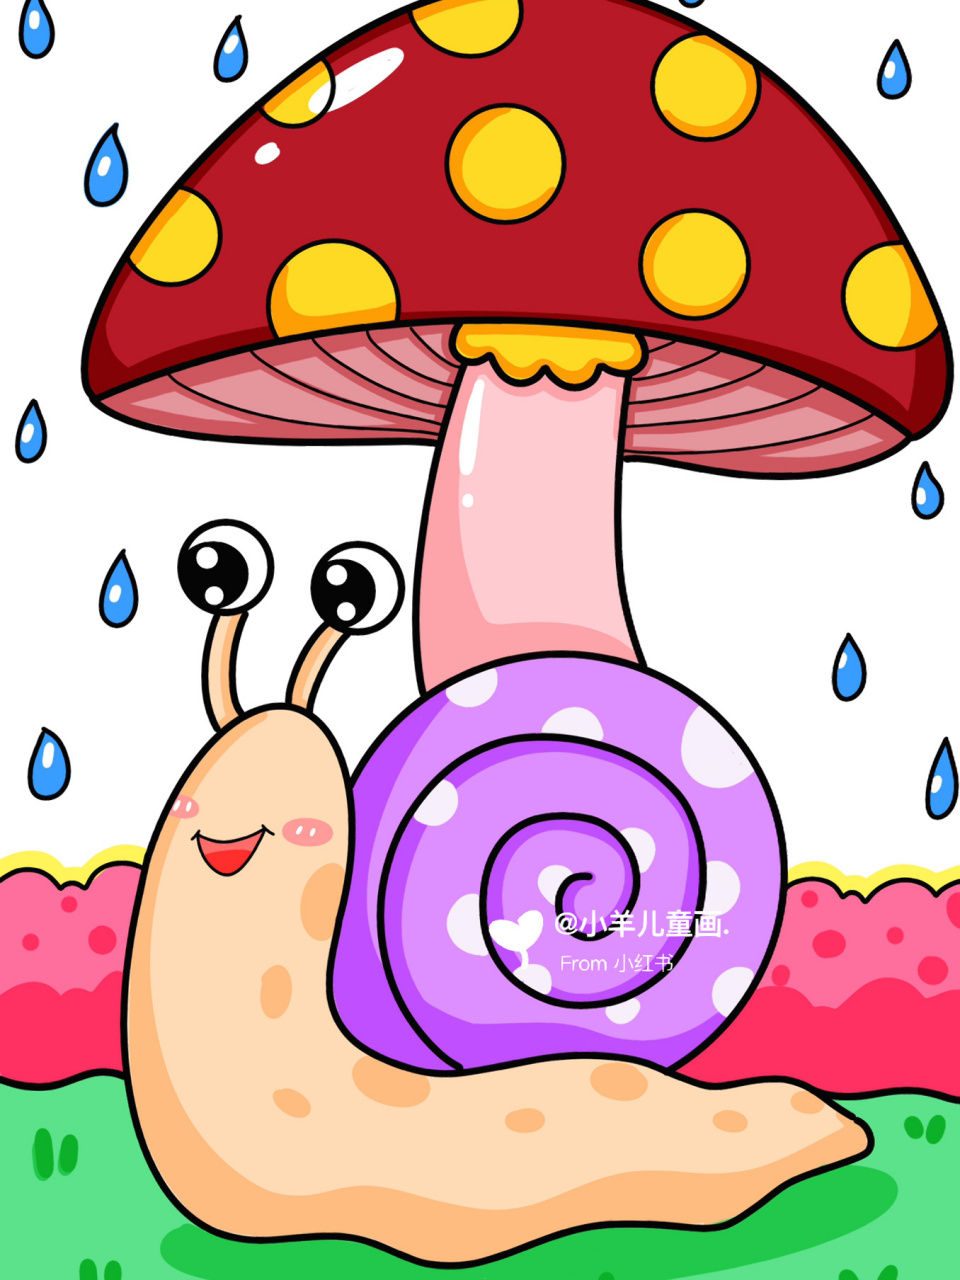 躲雨的小蜗牛儿童创意画 蜗牛简笔画 